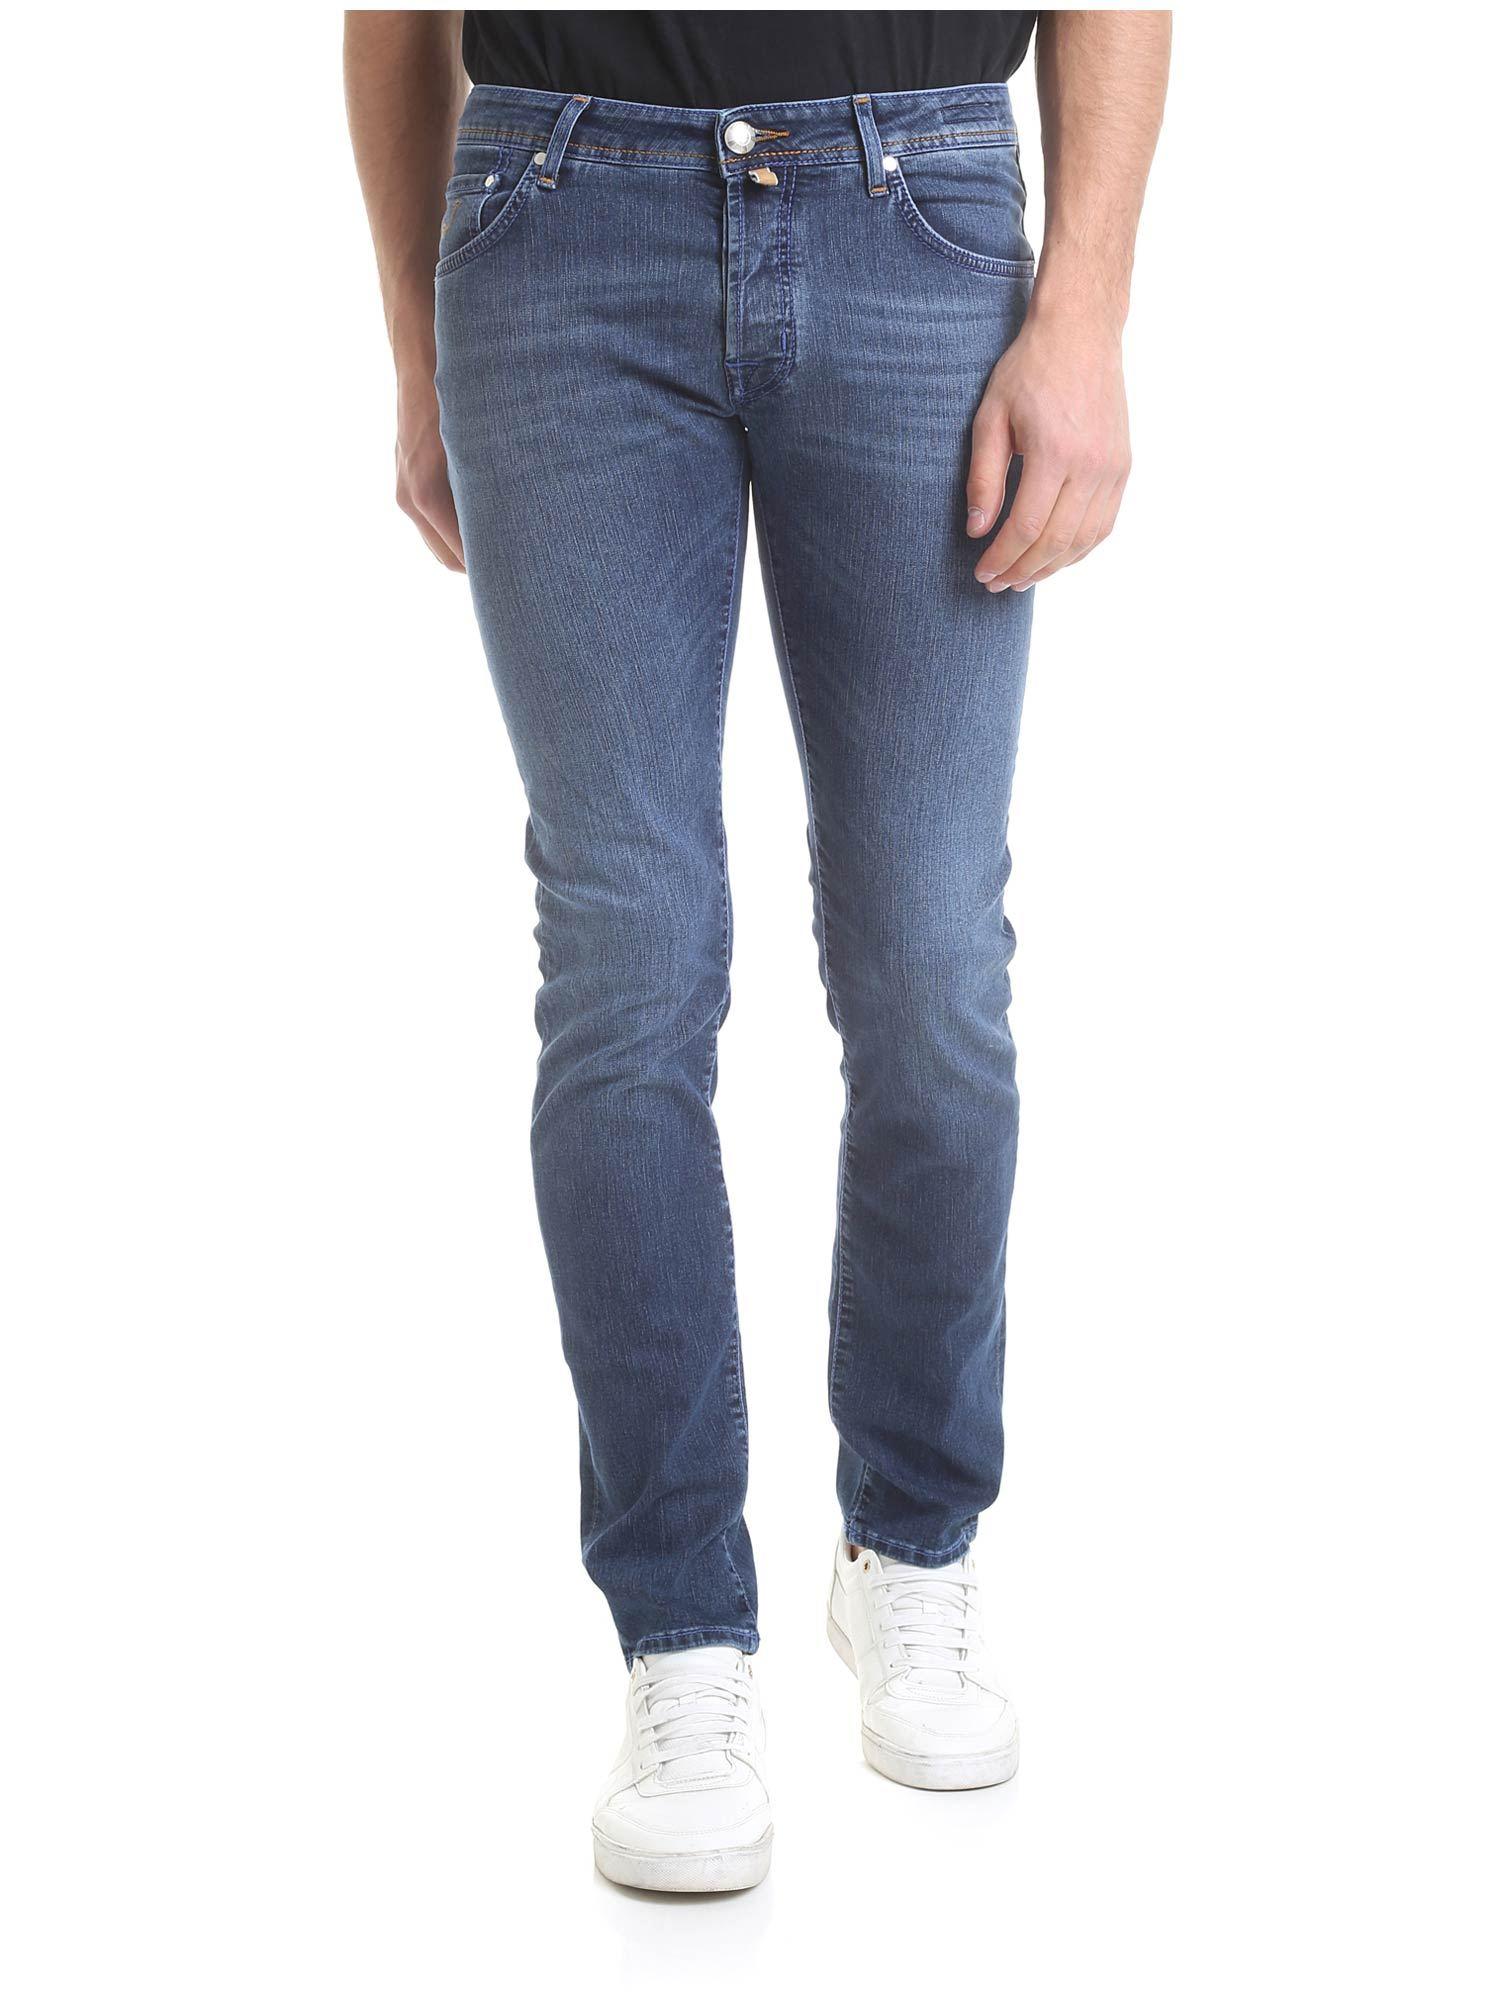 Jacob Cohen Blue Handmade Denim Jeans for Men - Lyst